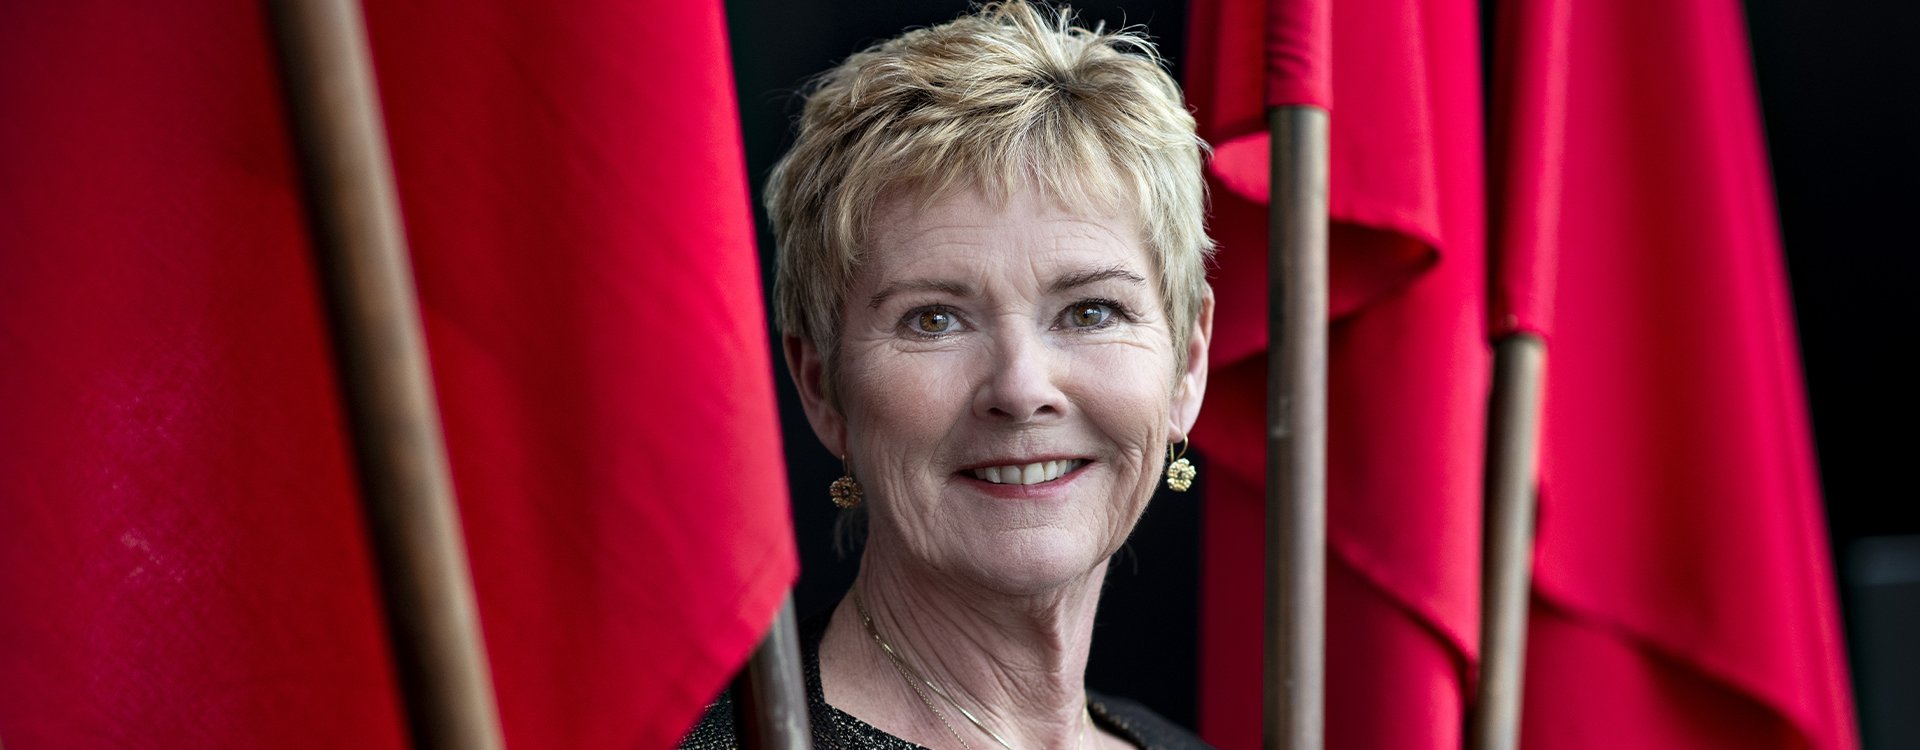 Lizette Risgaard - Formand for fagbevægelsens Hovedorganisation